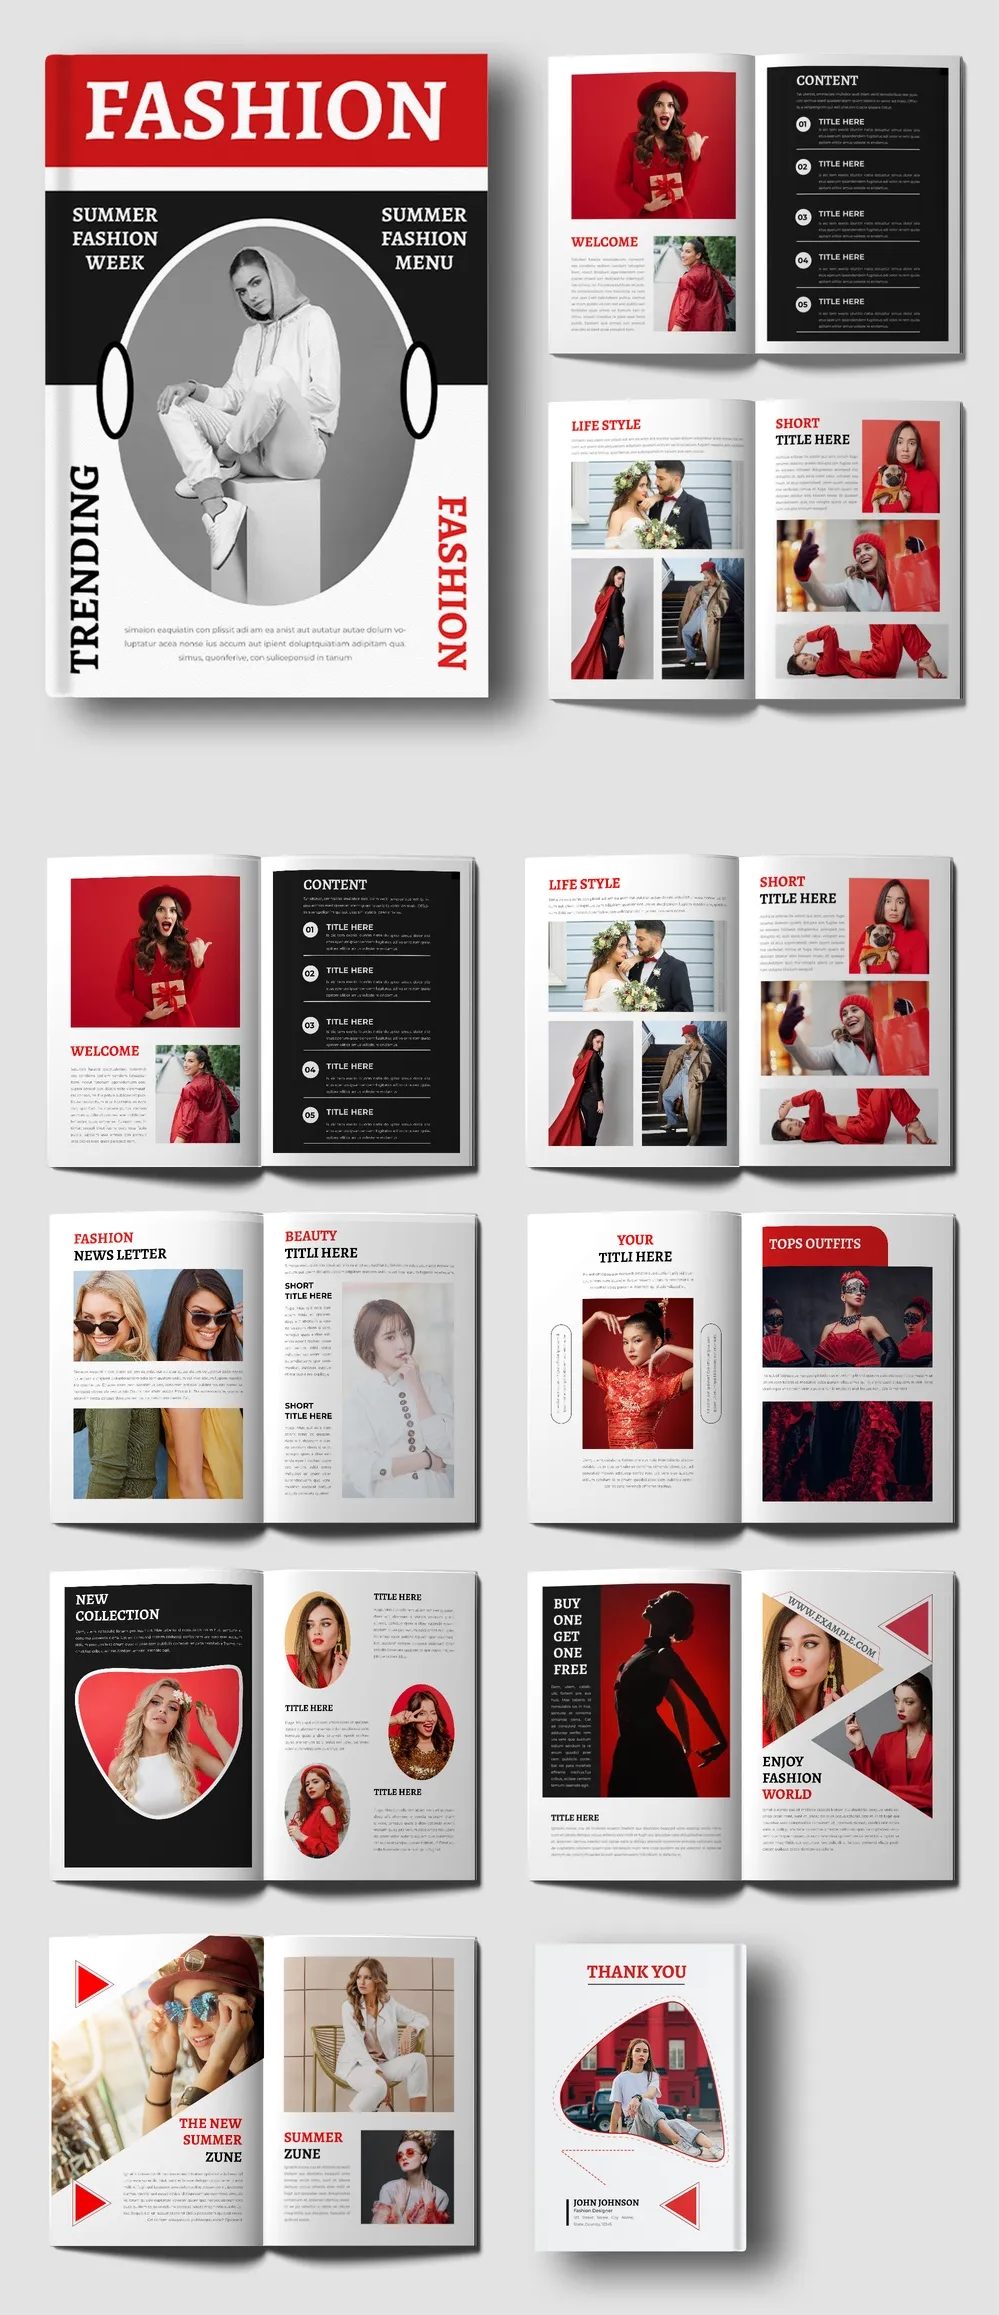 Adobestock - Fashion Magazine Design Template 718545679